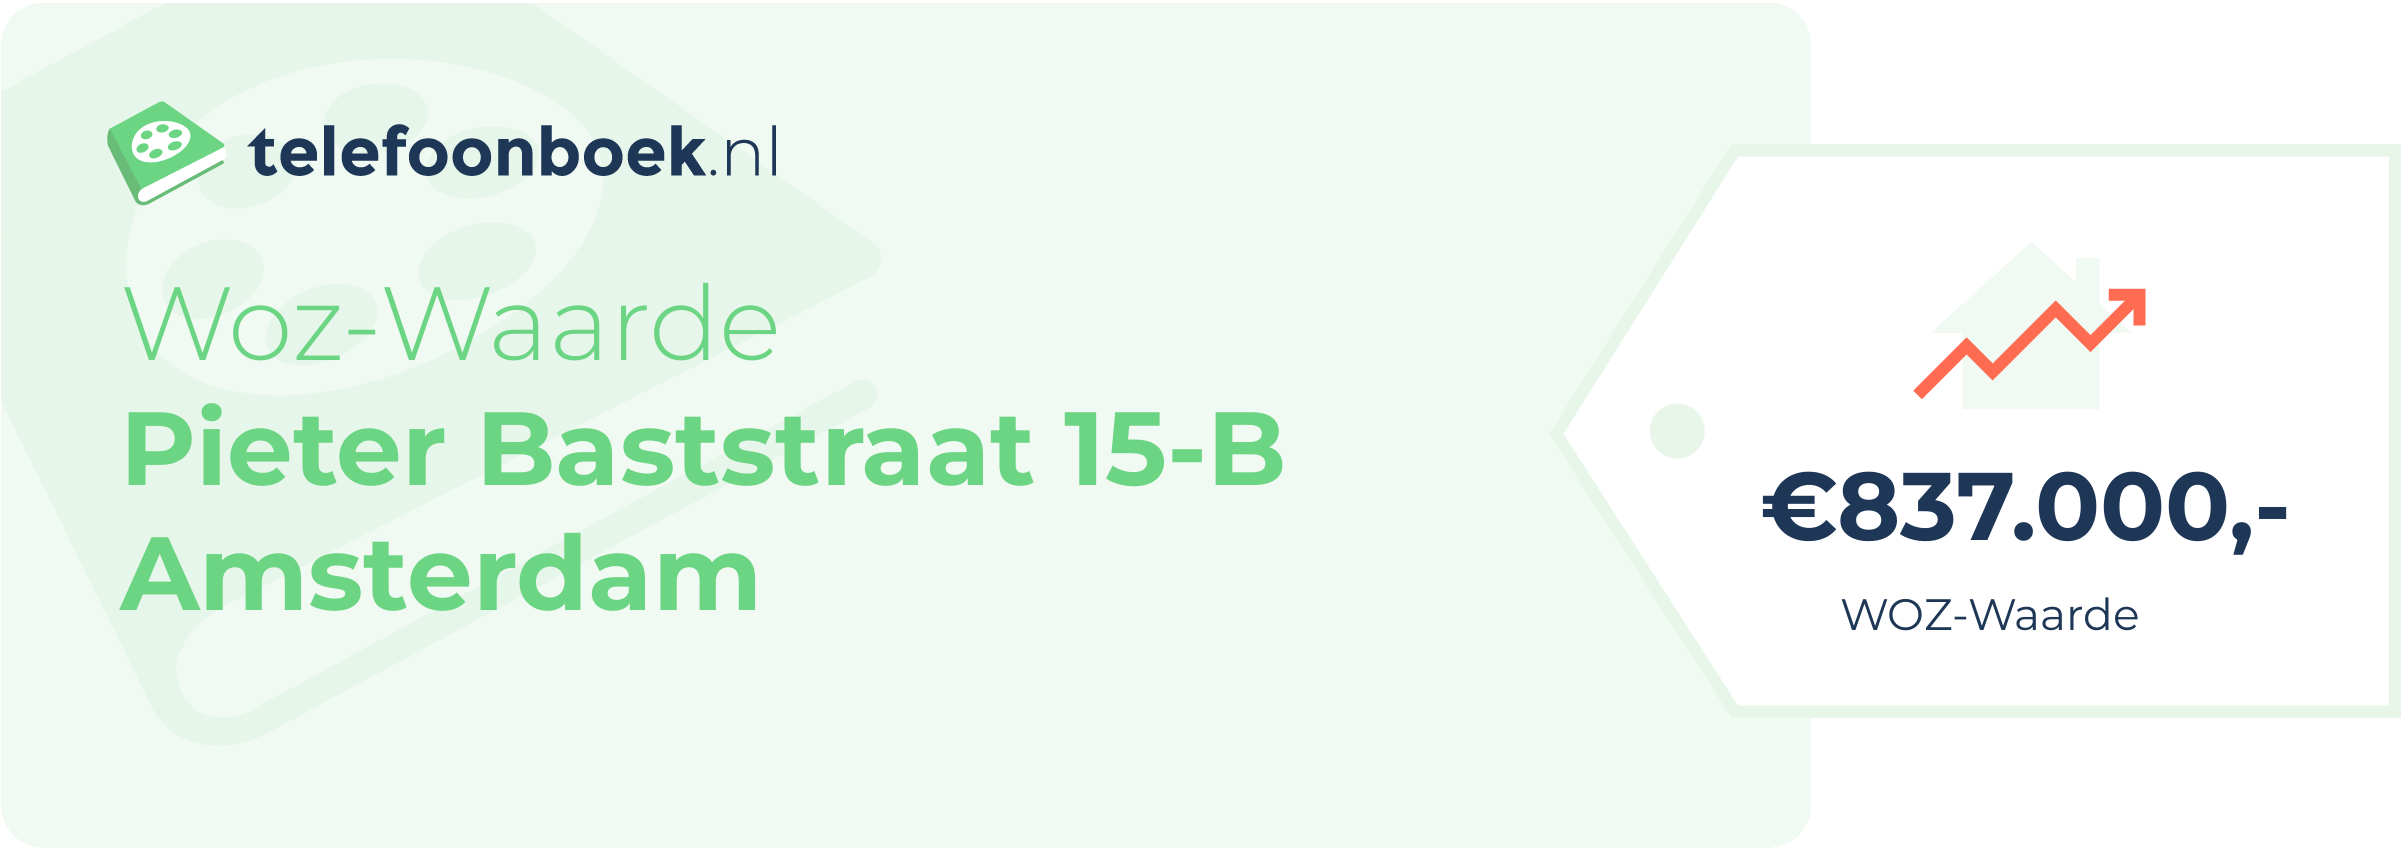 WOZ-waarde Pieter Baststraat 15-B Amsterdam